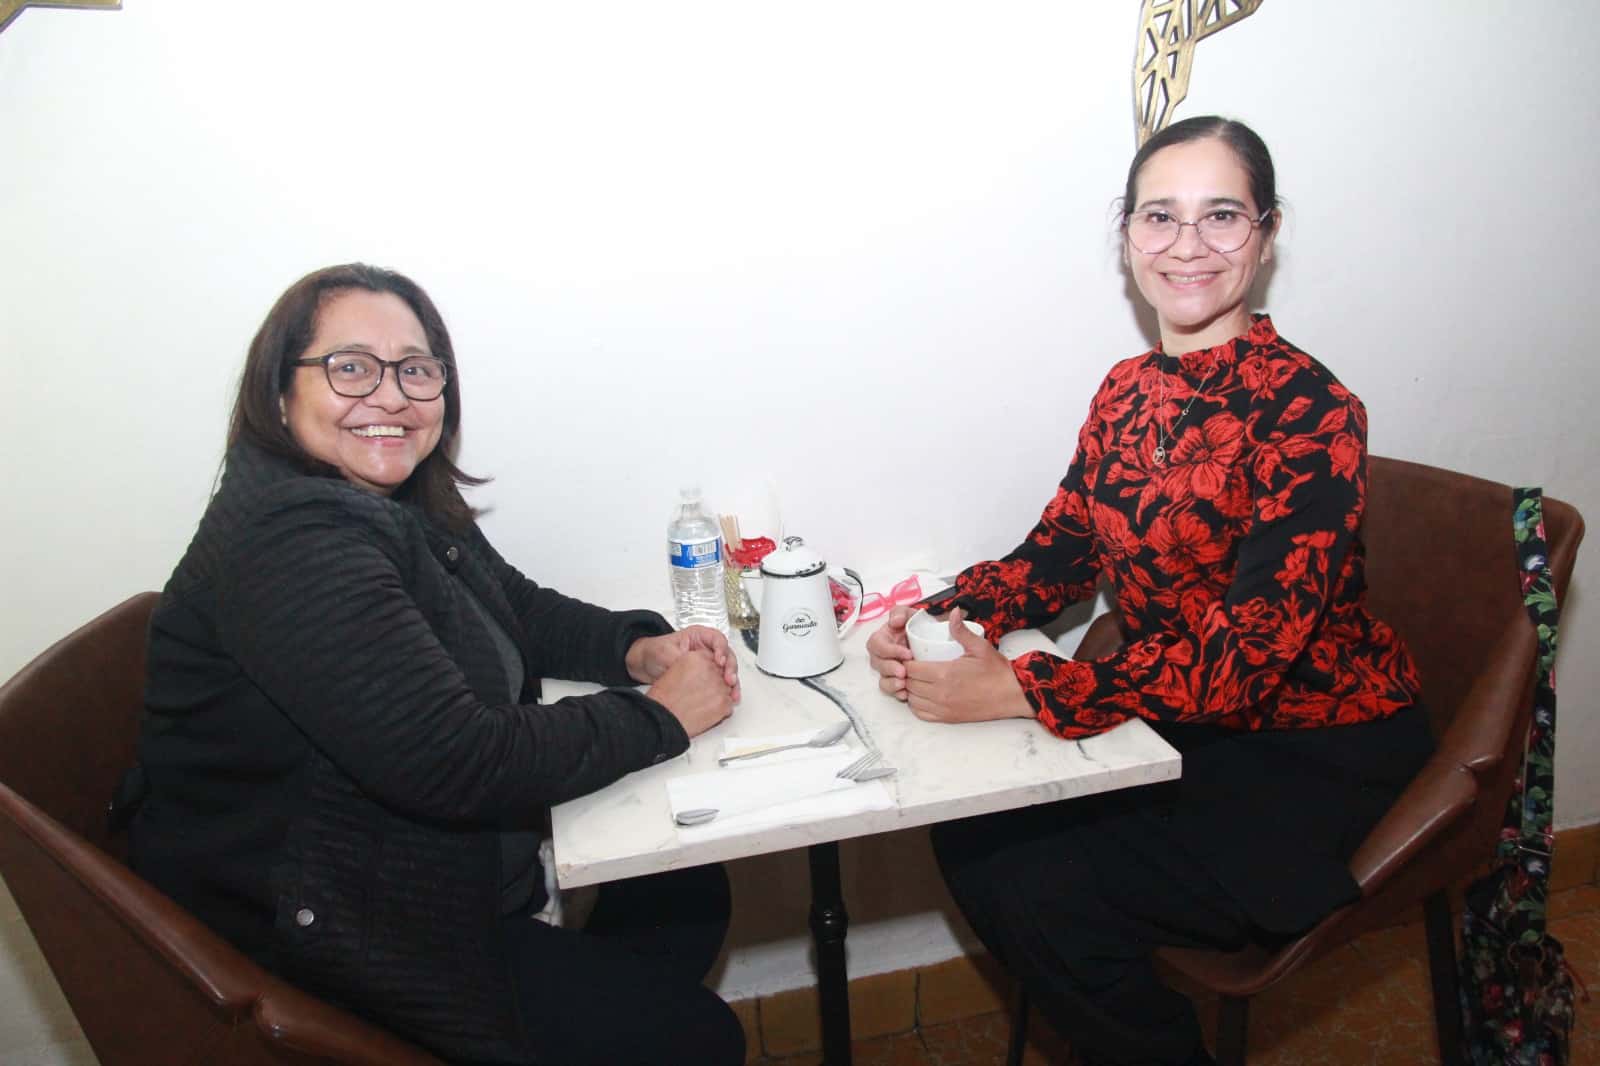 Comparten una velada especial en Casa Garmendia, Café y Churrería